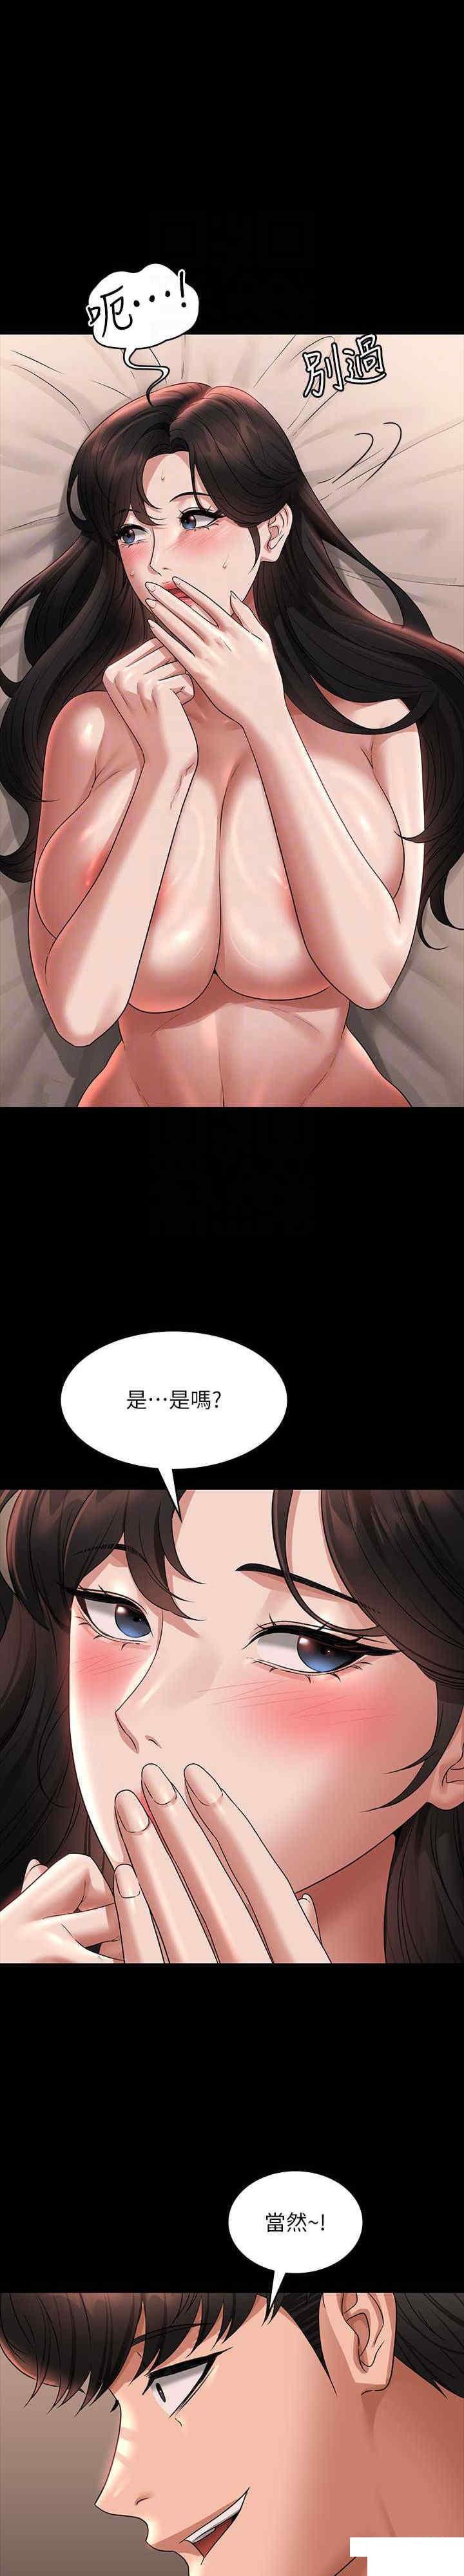 韩国污漫画 超級公務員 第94话 被狠狠抽插过的淫荡痕迹 9